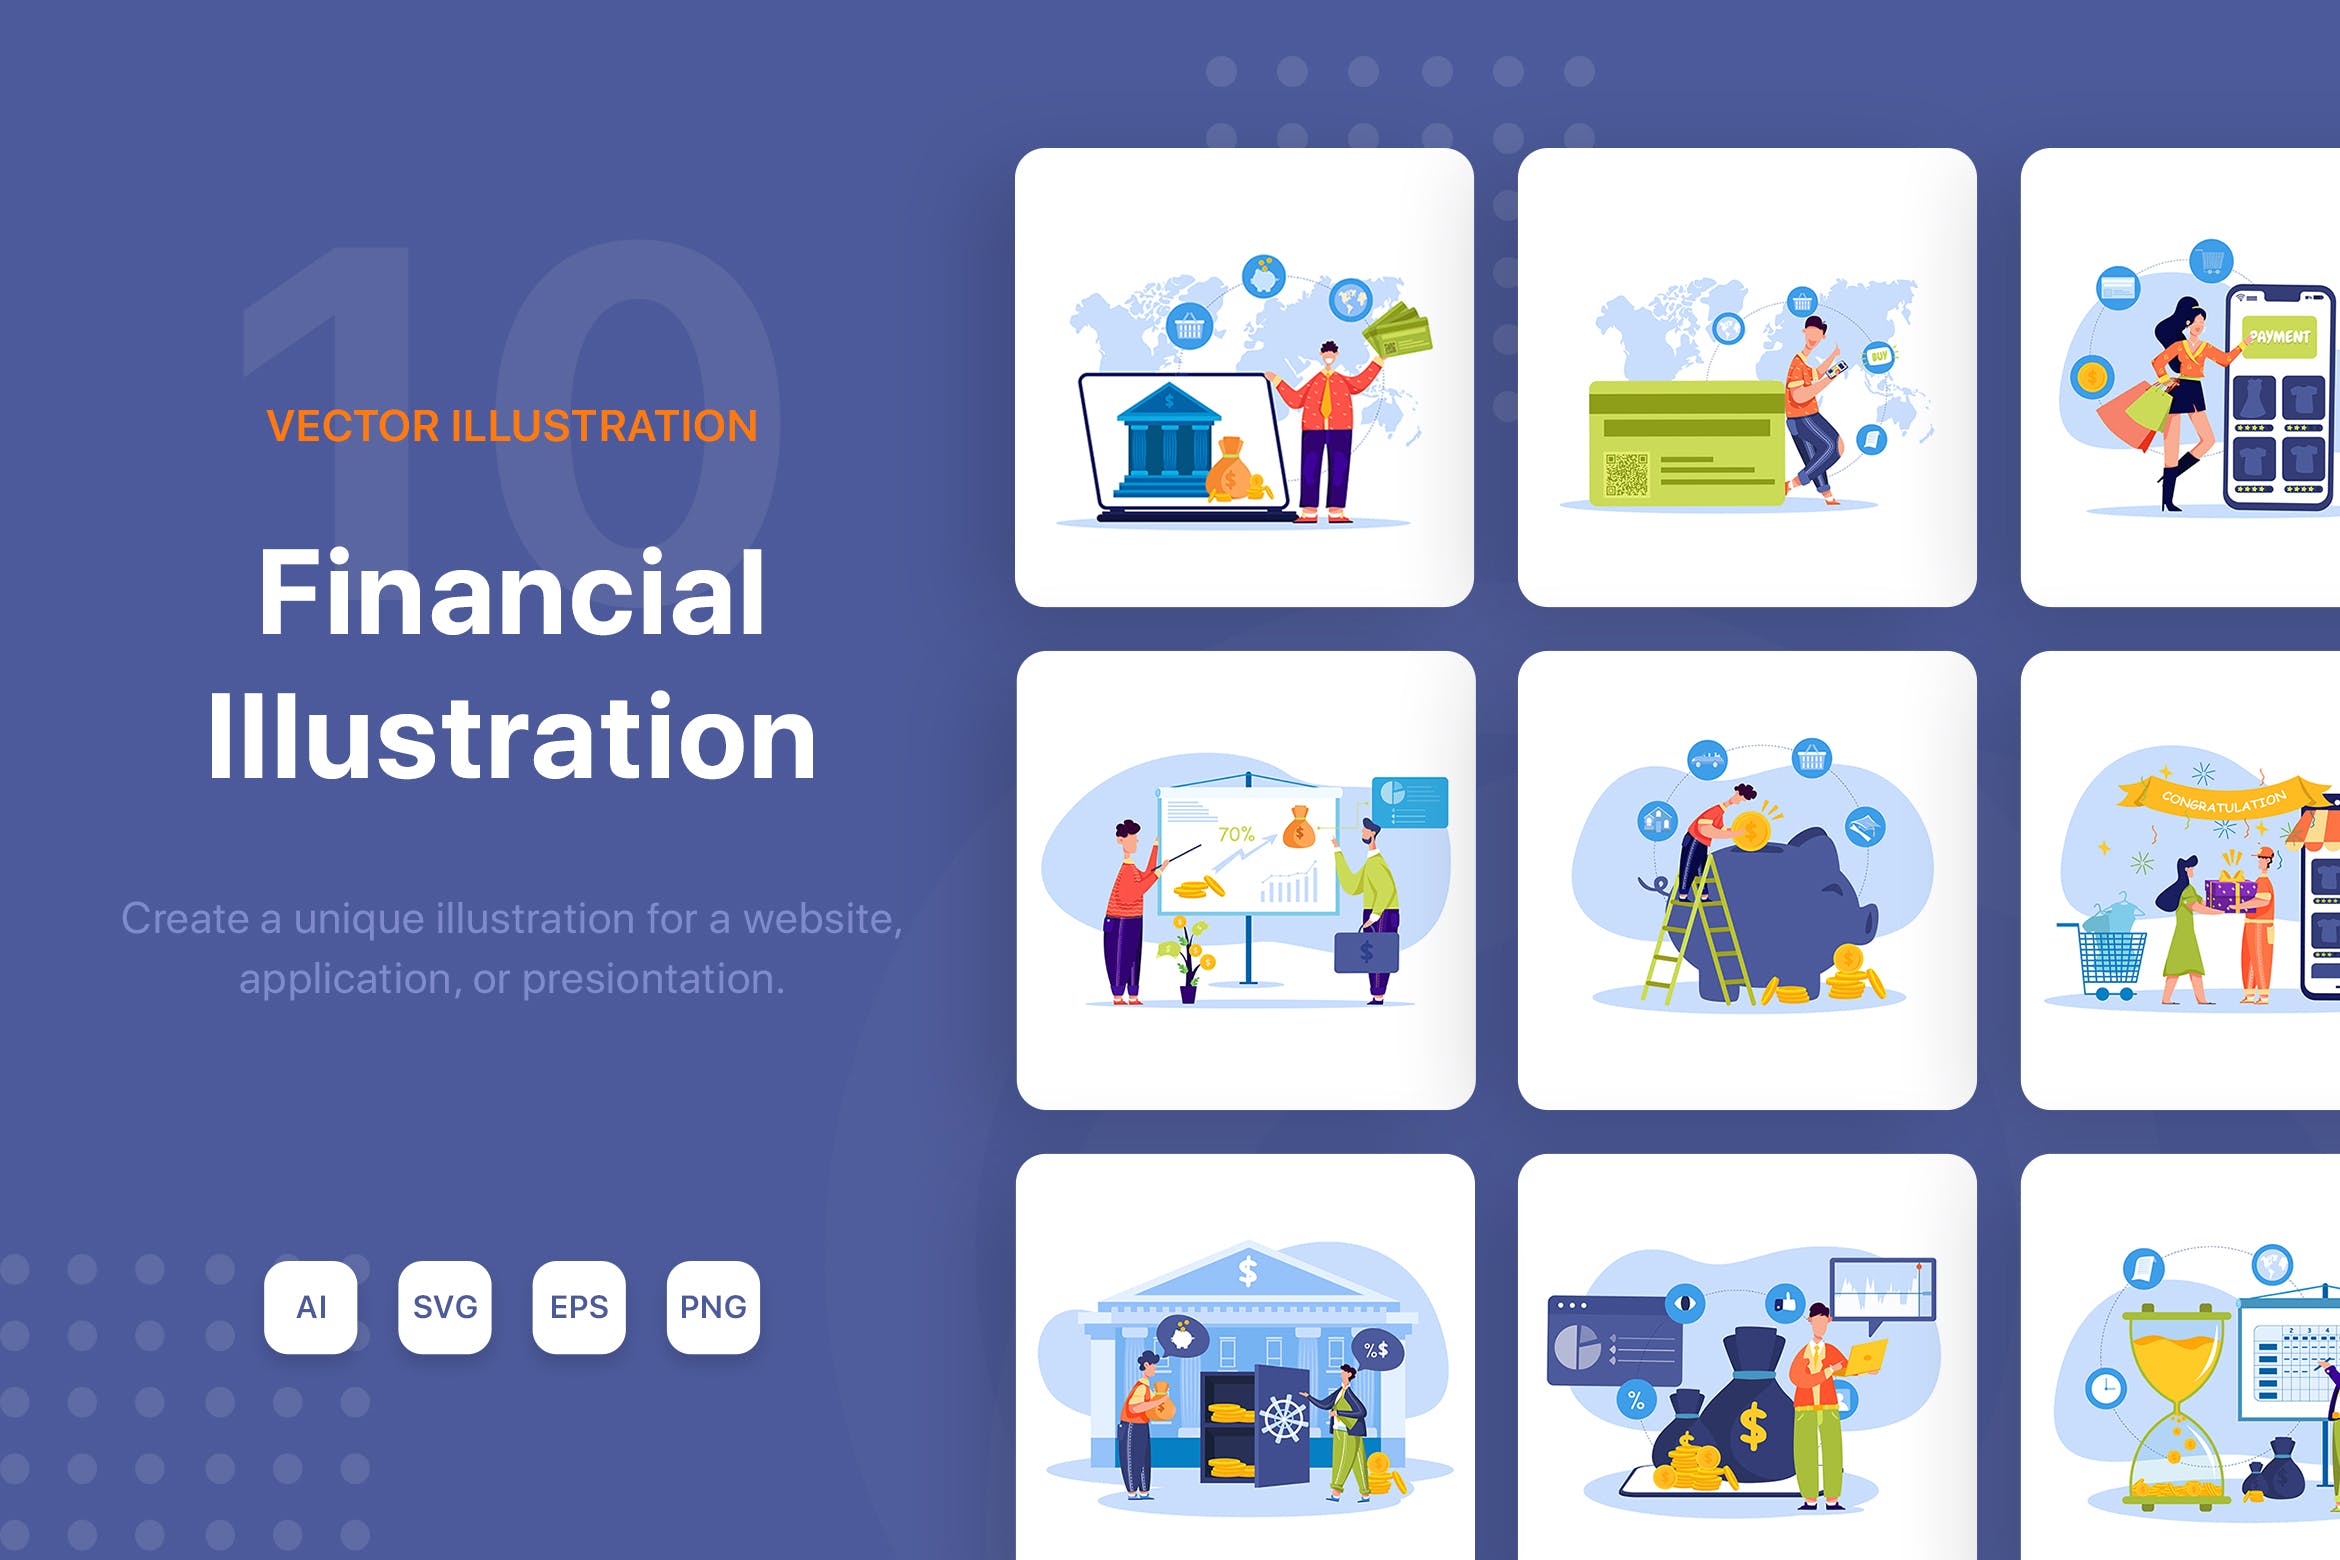 金融财务主题矢量插画设计素材包 Financial Illustrations Pack插图